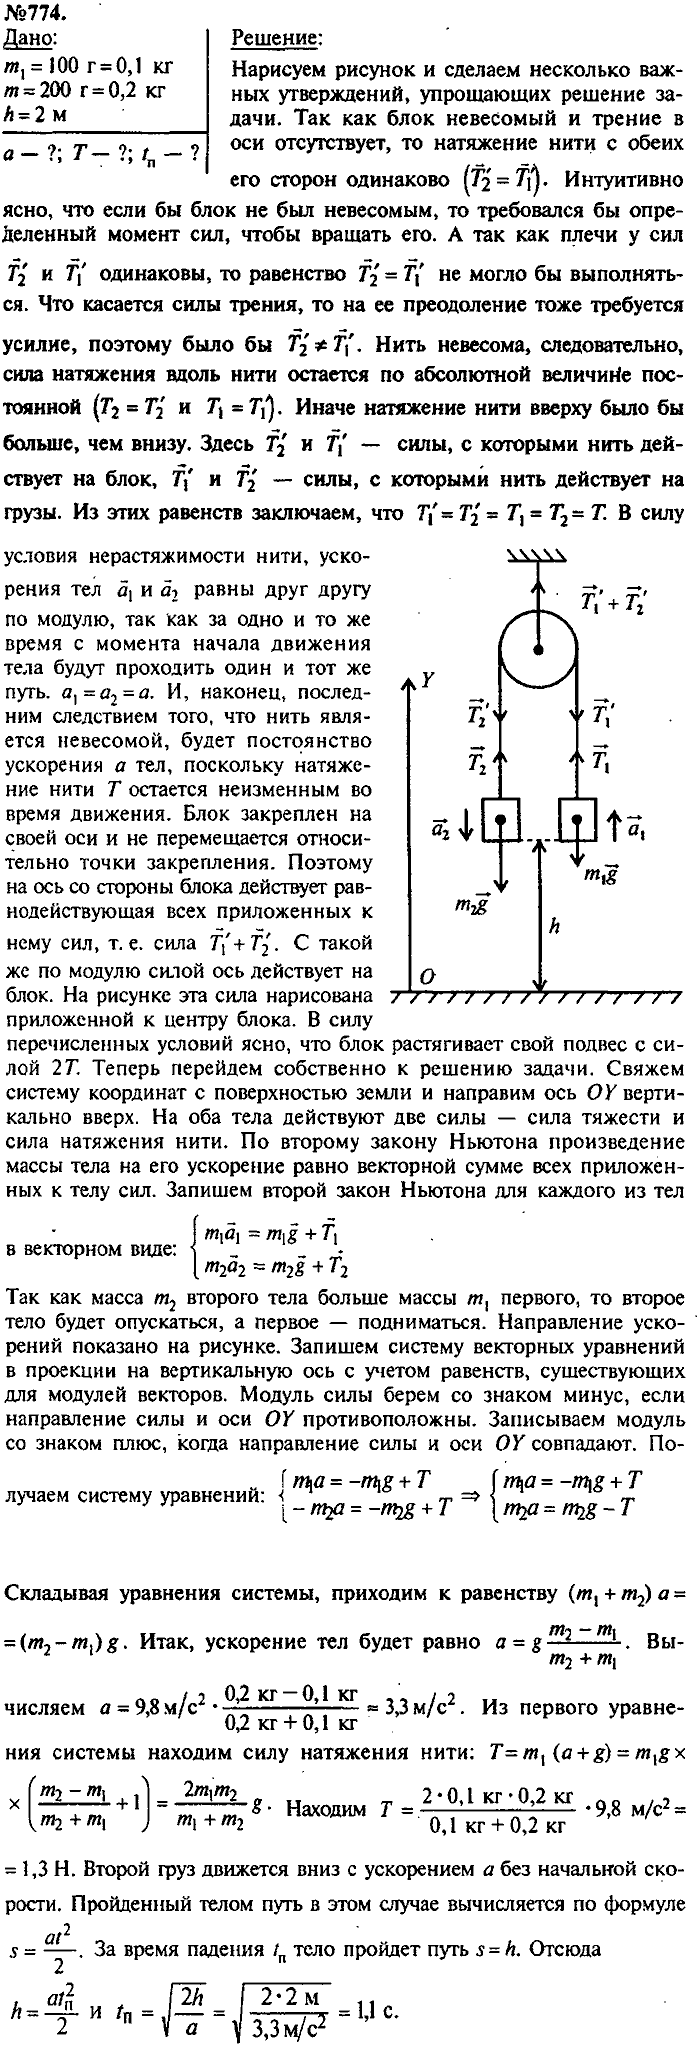 Сборник задач, 8 класс, Лукашик, Иванова, 2001 - 2011, задача: 774